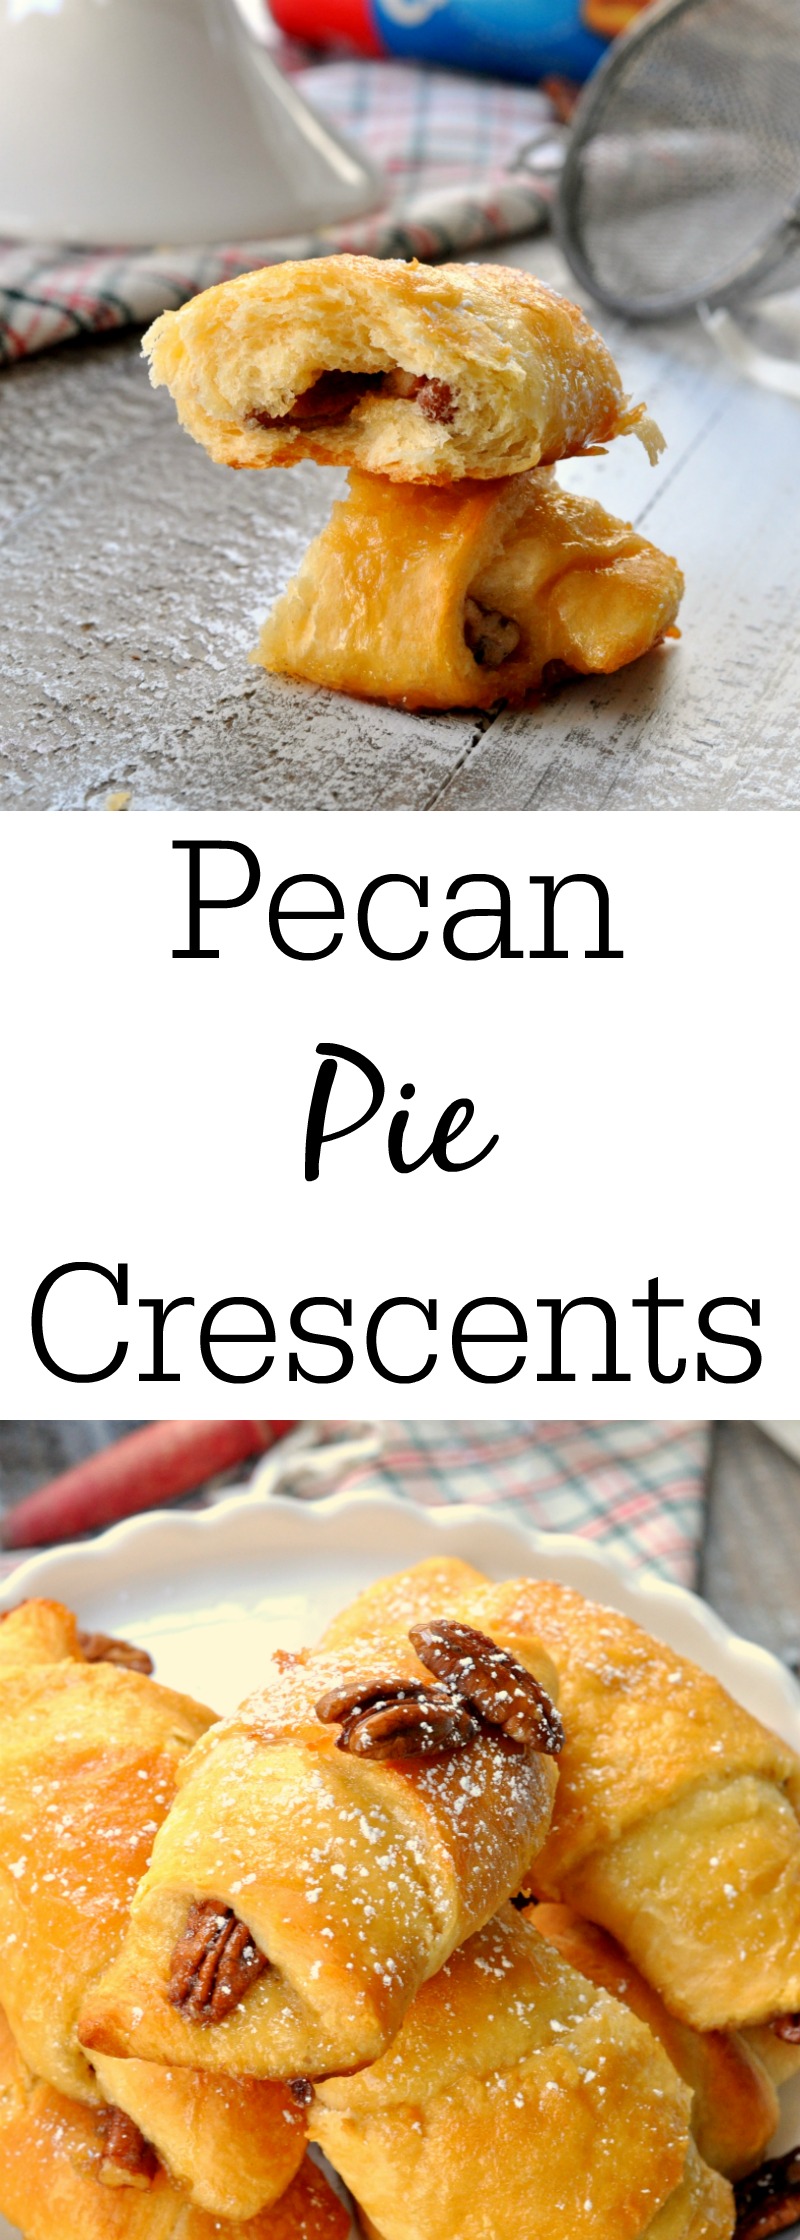 Pecan Pie Crescent Rolls